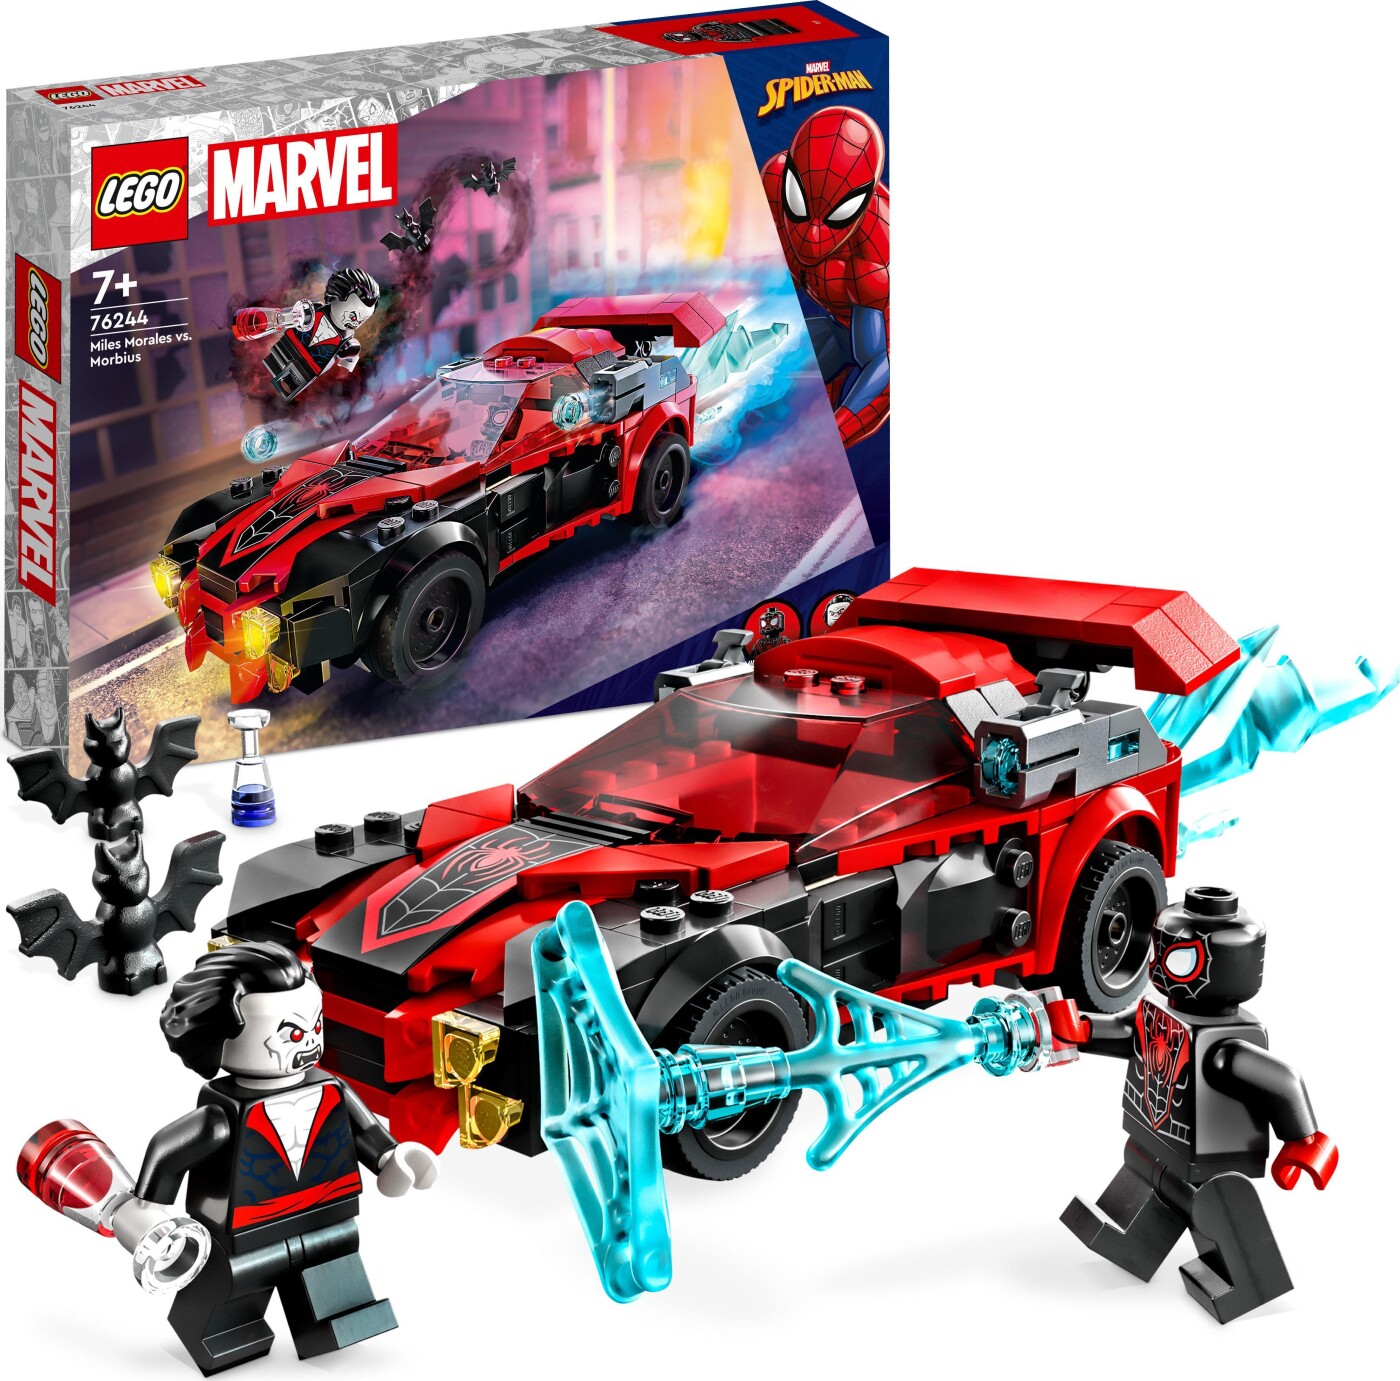 Billede af Lego Marvel Spider-man - Miles Morales Mod Morbius - 76244